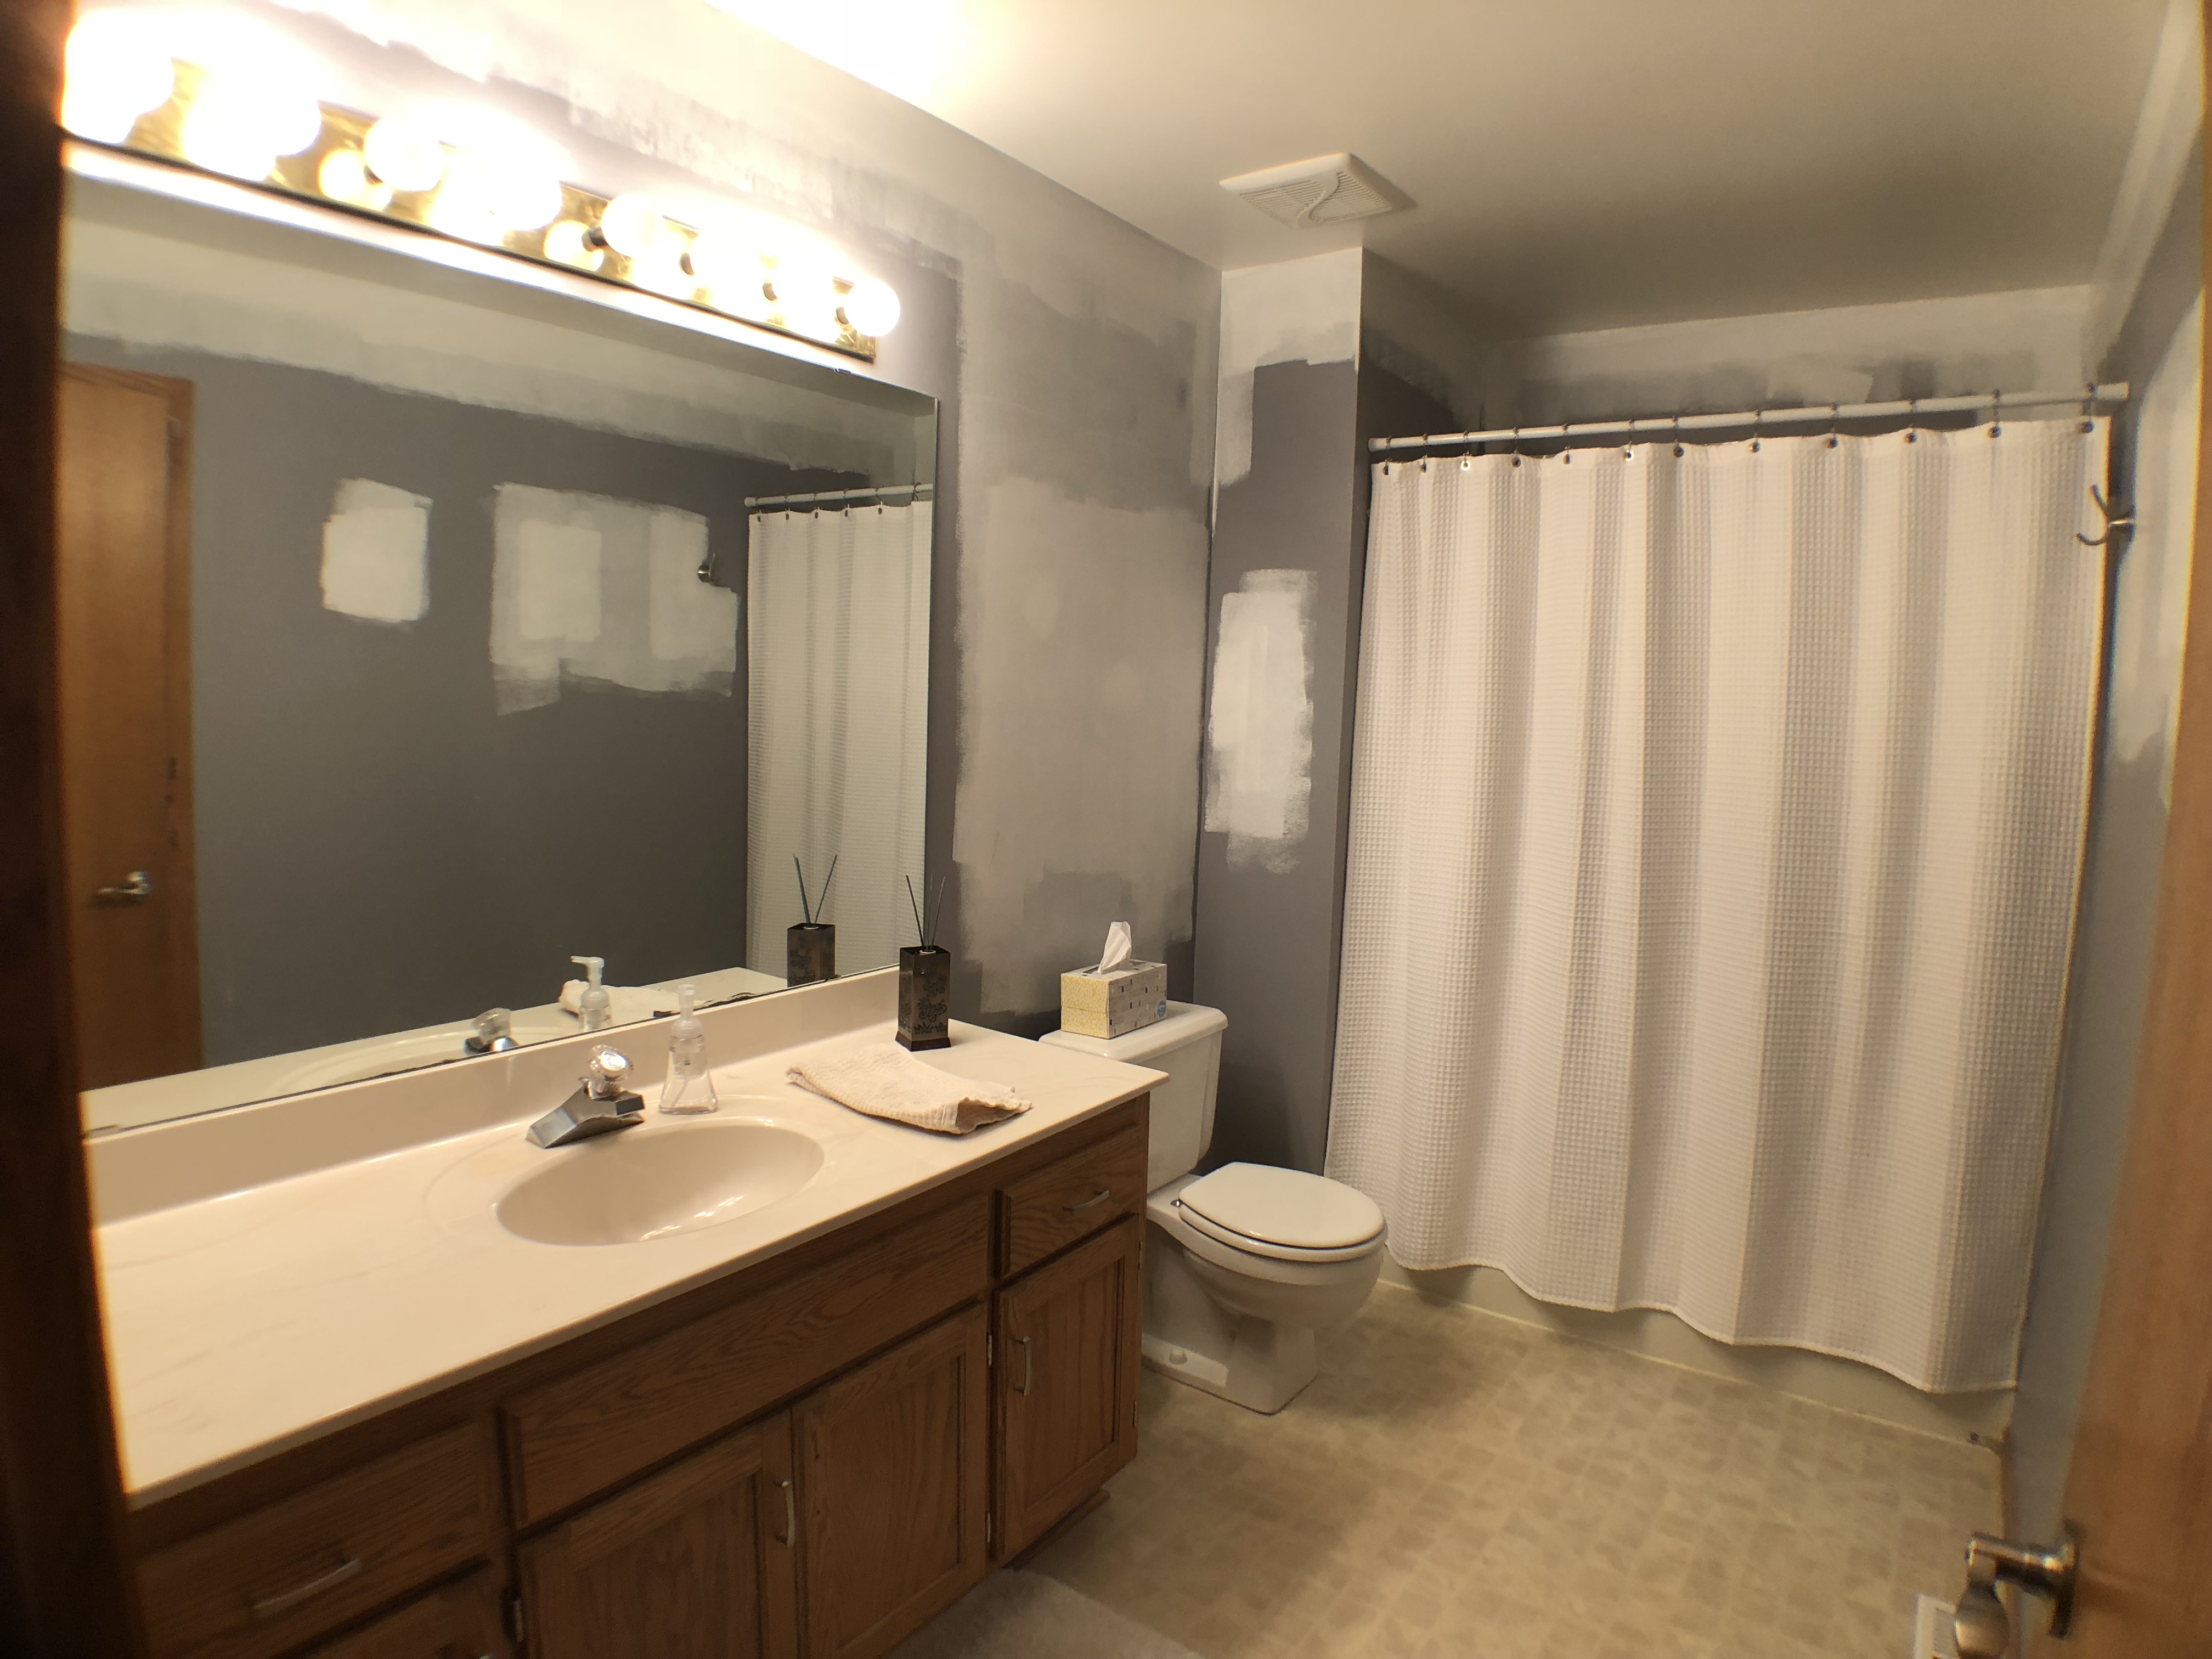 Lakeville Bathroom Remodel